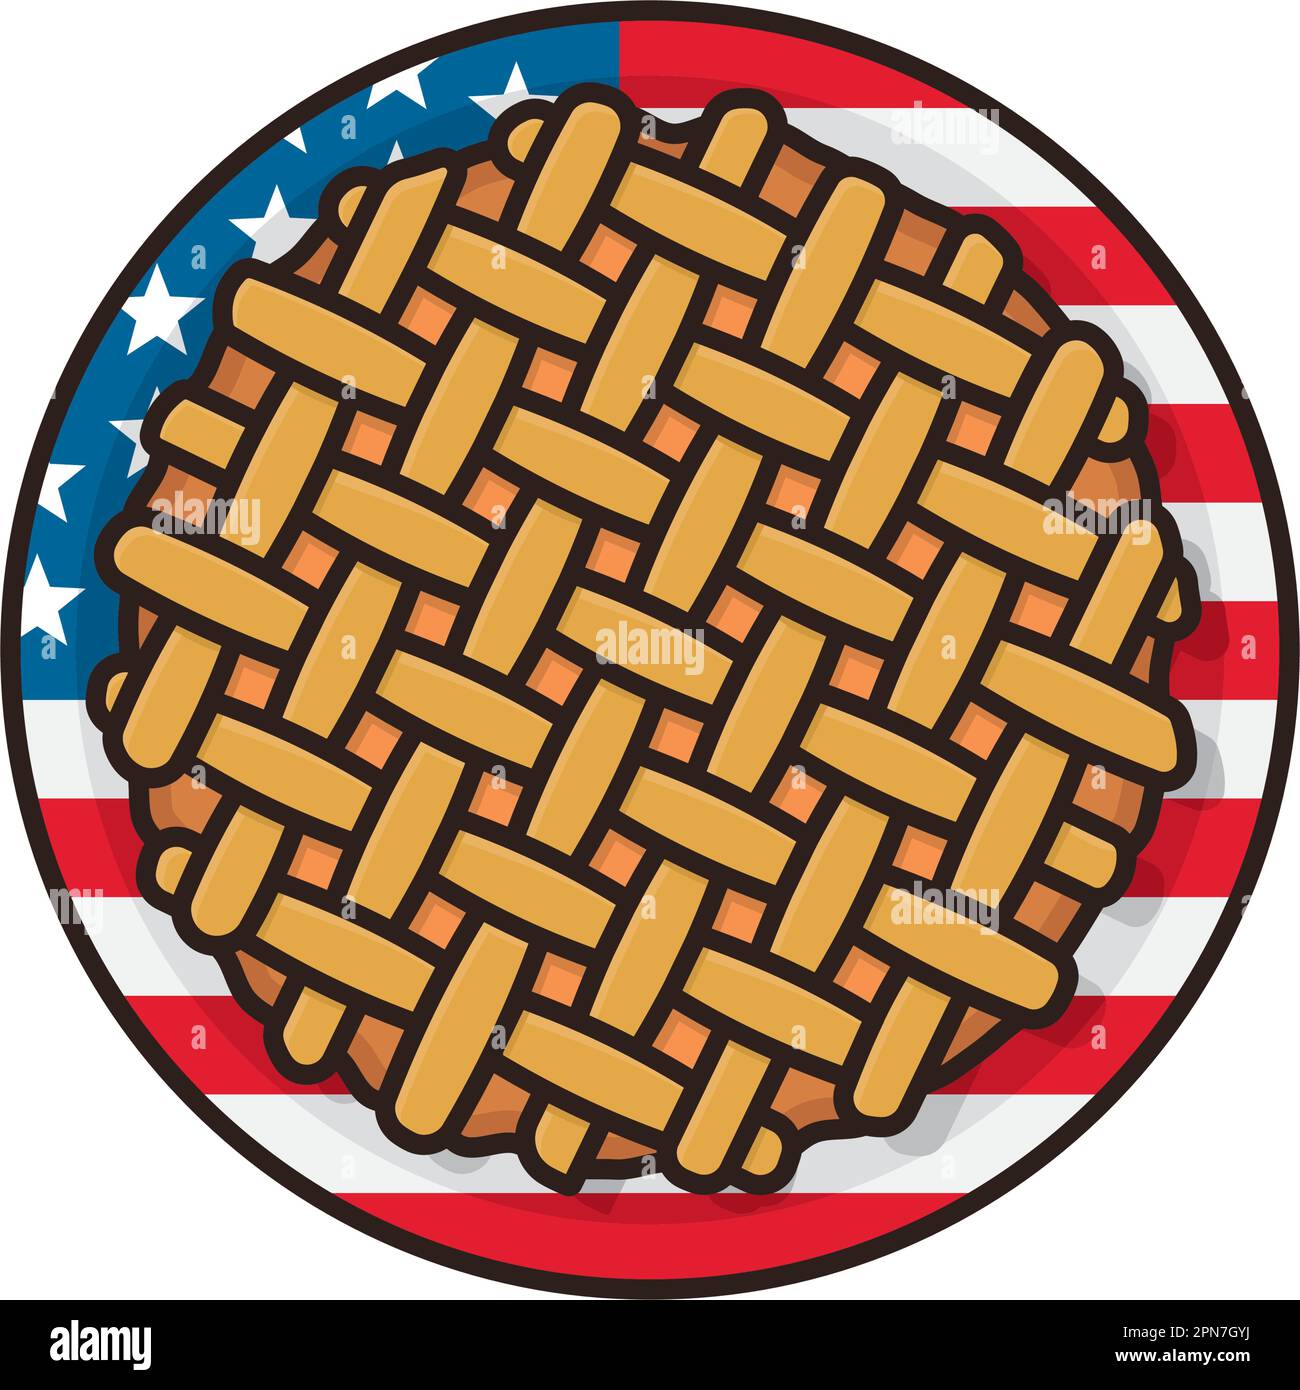 Torte auf Platte mit isoaltierter Vektordarstellung der US-Flagge für den National Pie Day am 23. januar Stock Vektor